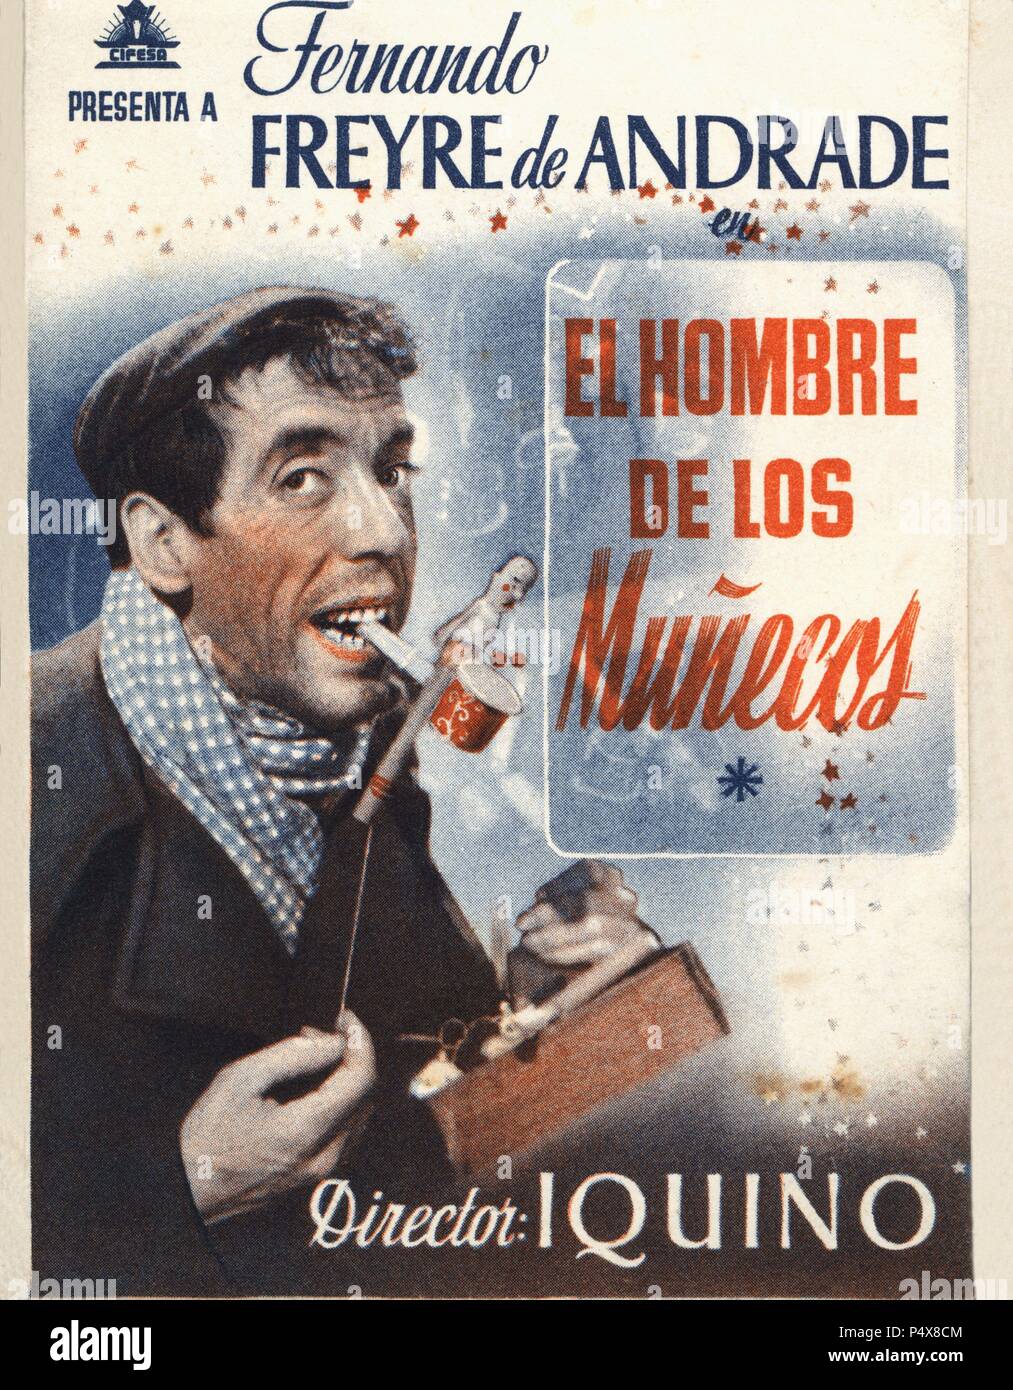 Cartel de la película El Hombre de los Muñecos, con Fernando Freyre de Andrade, dirigida por Ignacio F. Iquino. España, 1943. Stock Photo